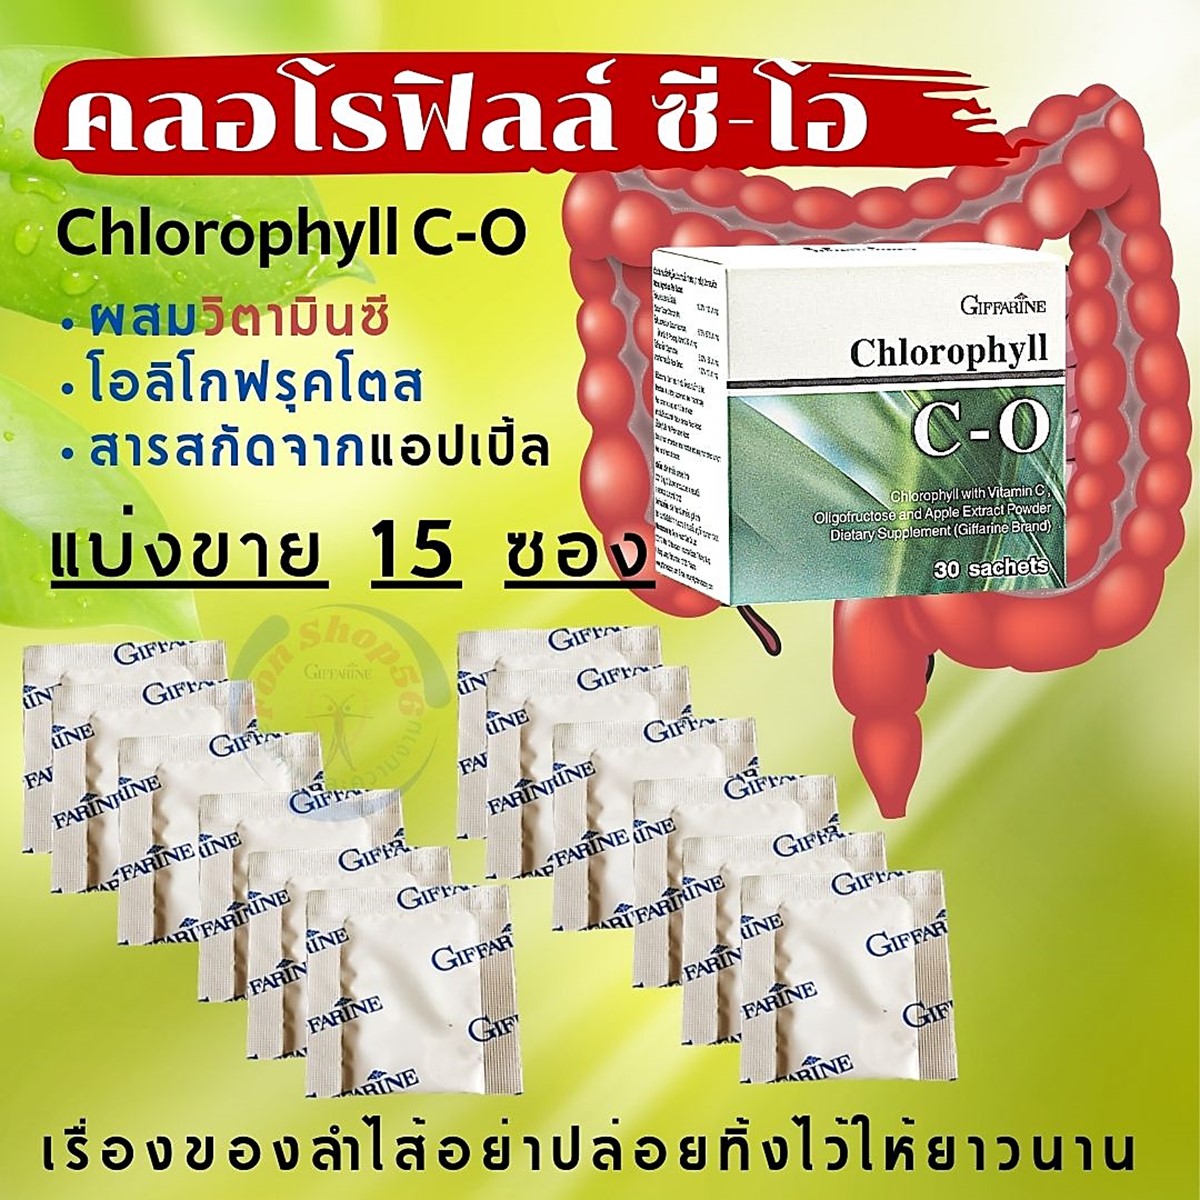 ส่งฟรี แพ็ค 15 ซอง⚡คลอโรฟิลล์ ซี โอ กิฟฟารีน Chlorophyll C-O วิตามินซี สารสกัดแอปเปิ้ลเขียว คลอโรฟิลล์ผง ระบบขับถ่าย ท้องผูก Giffarine FonShop56